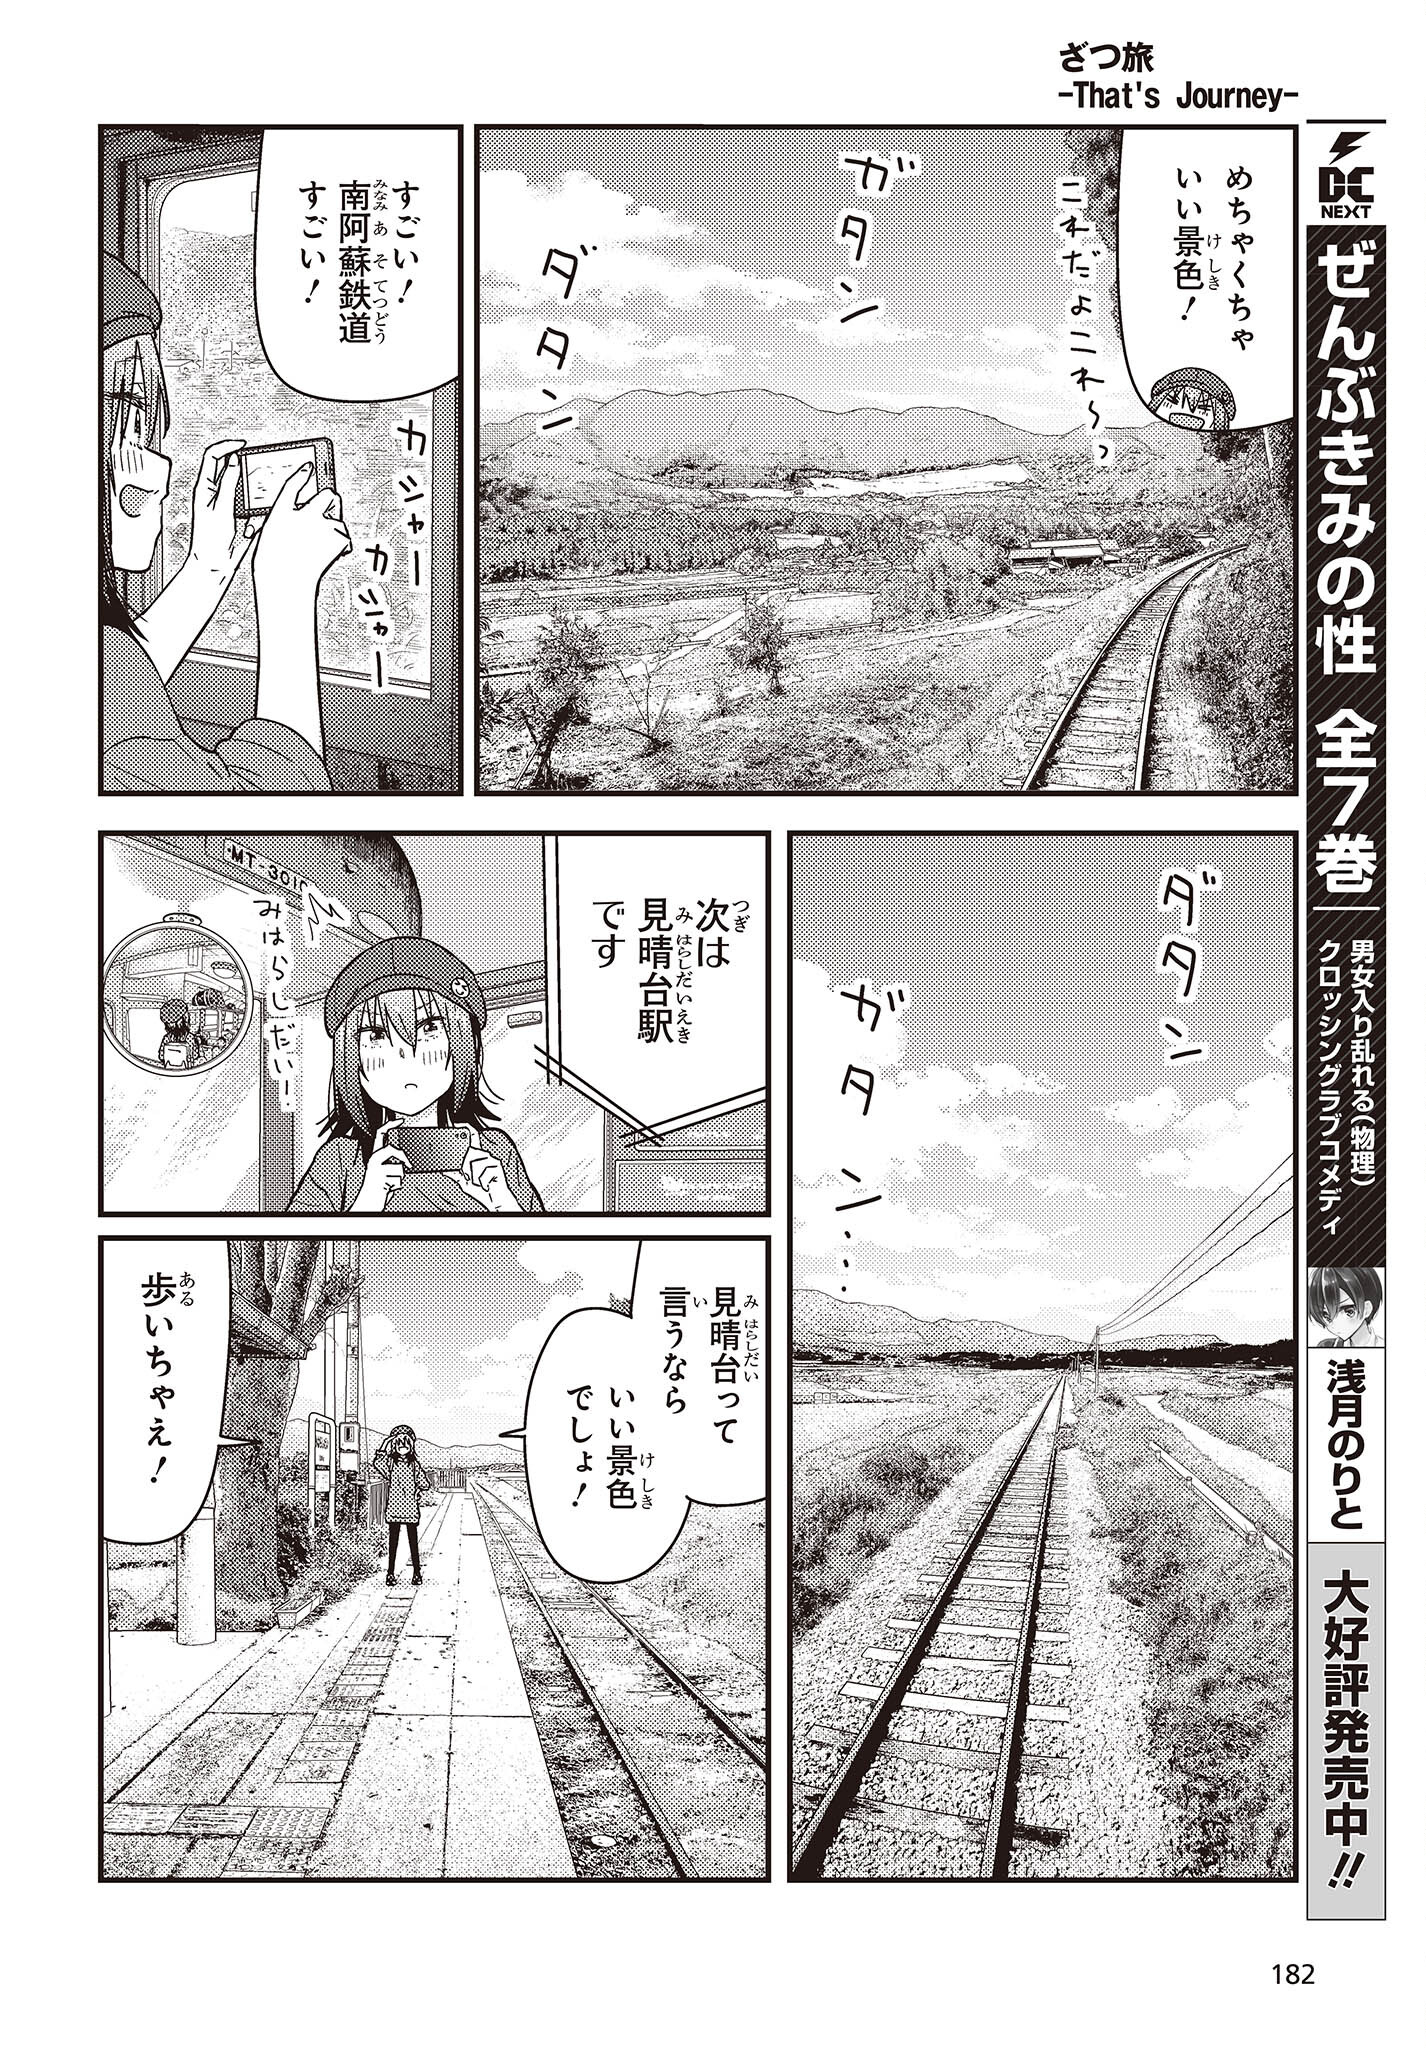 ざつ旅-That's Journey- 第34話 - Page 22